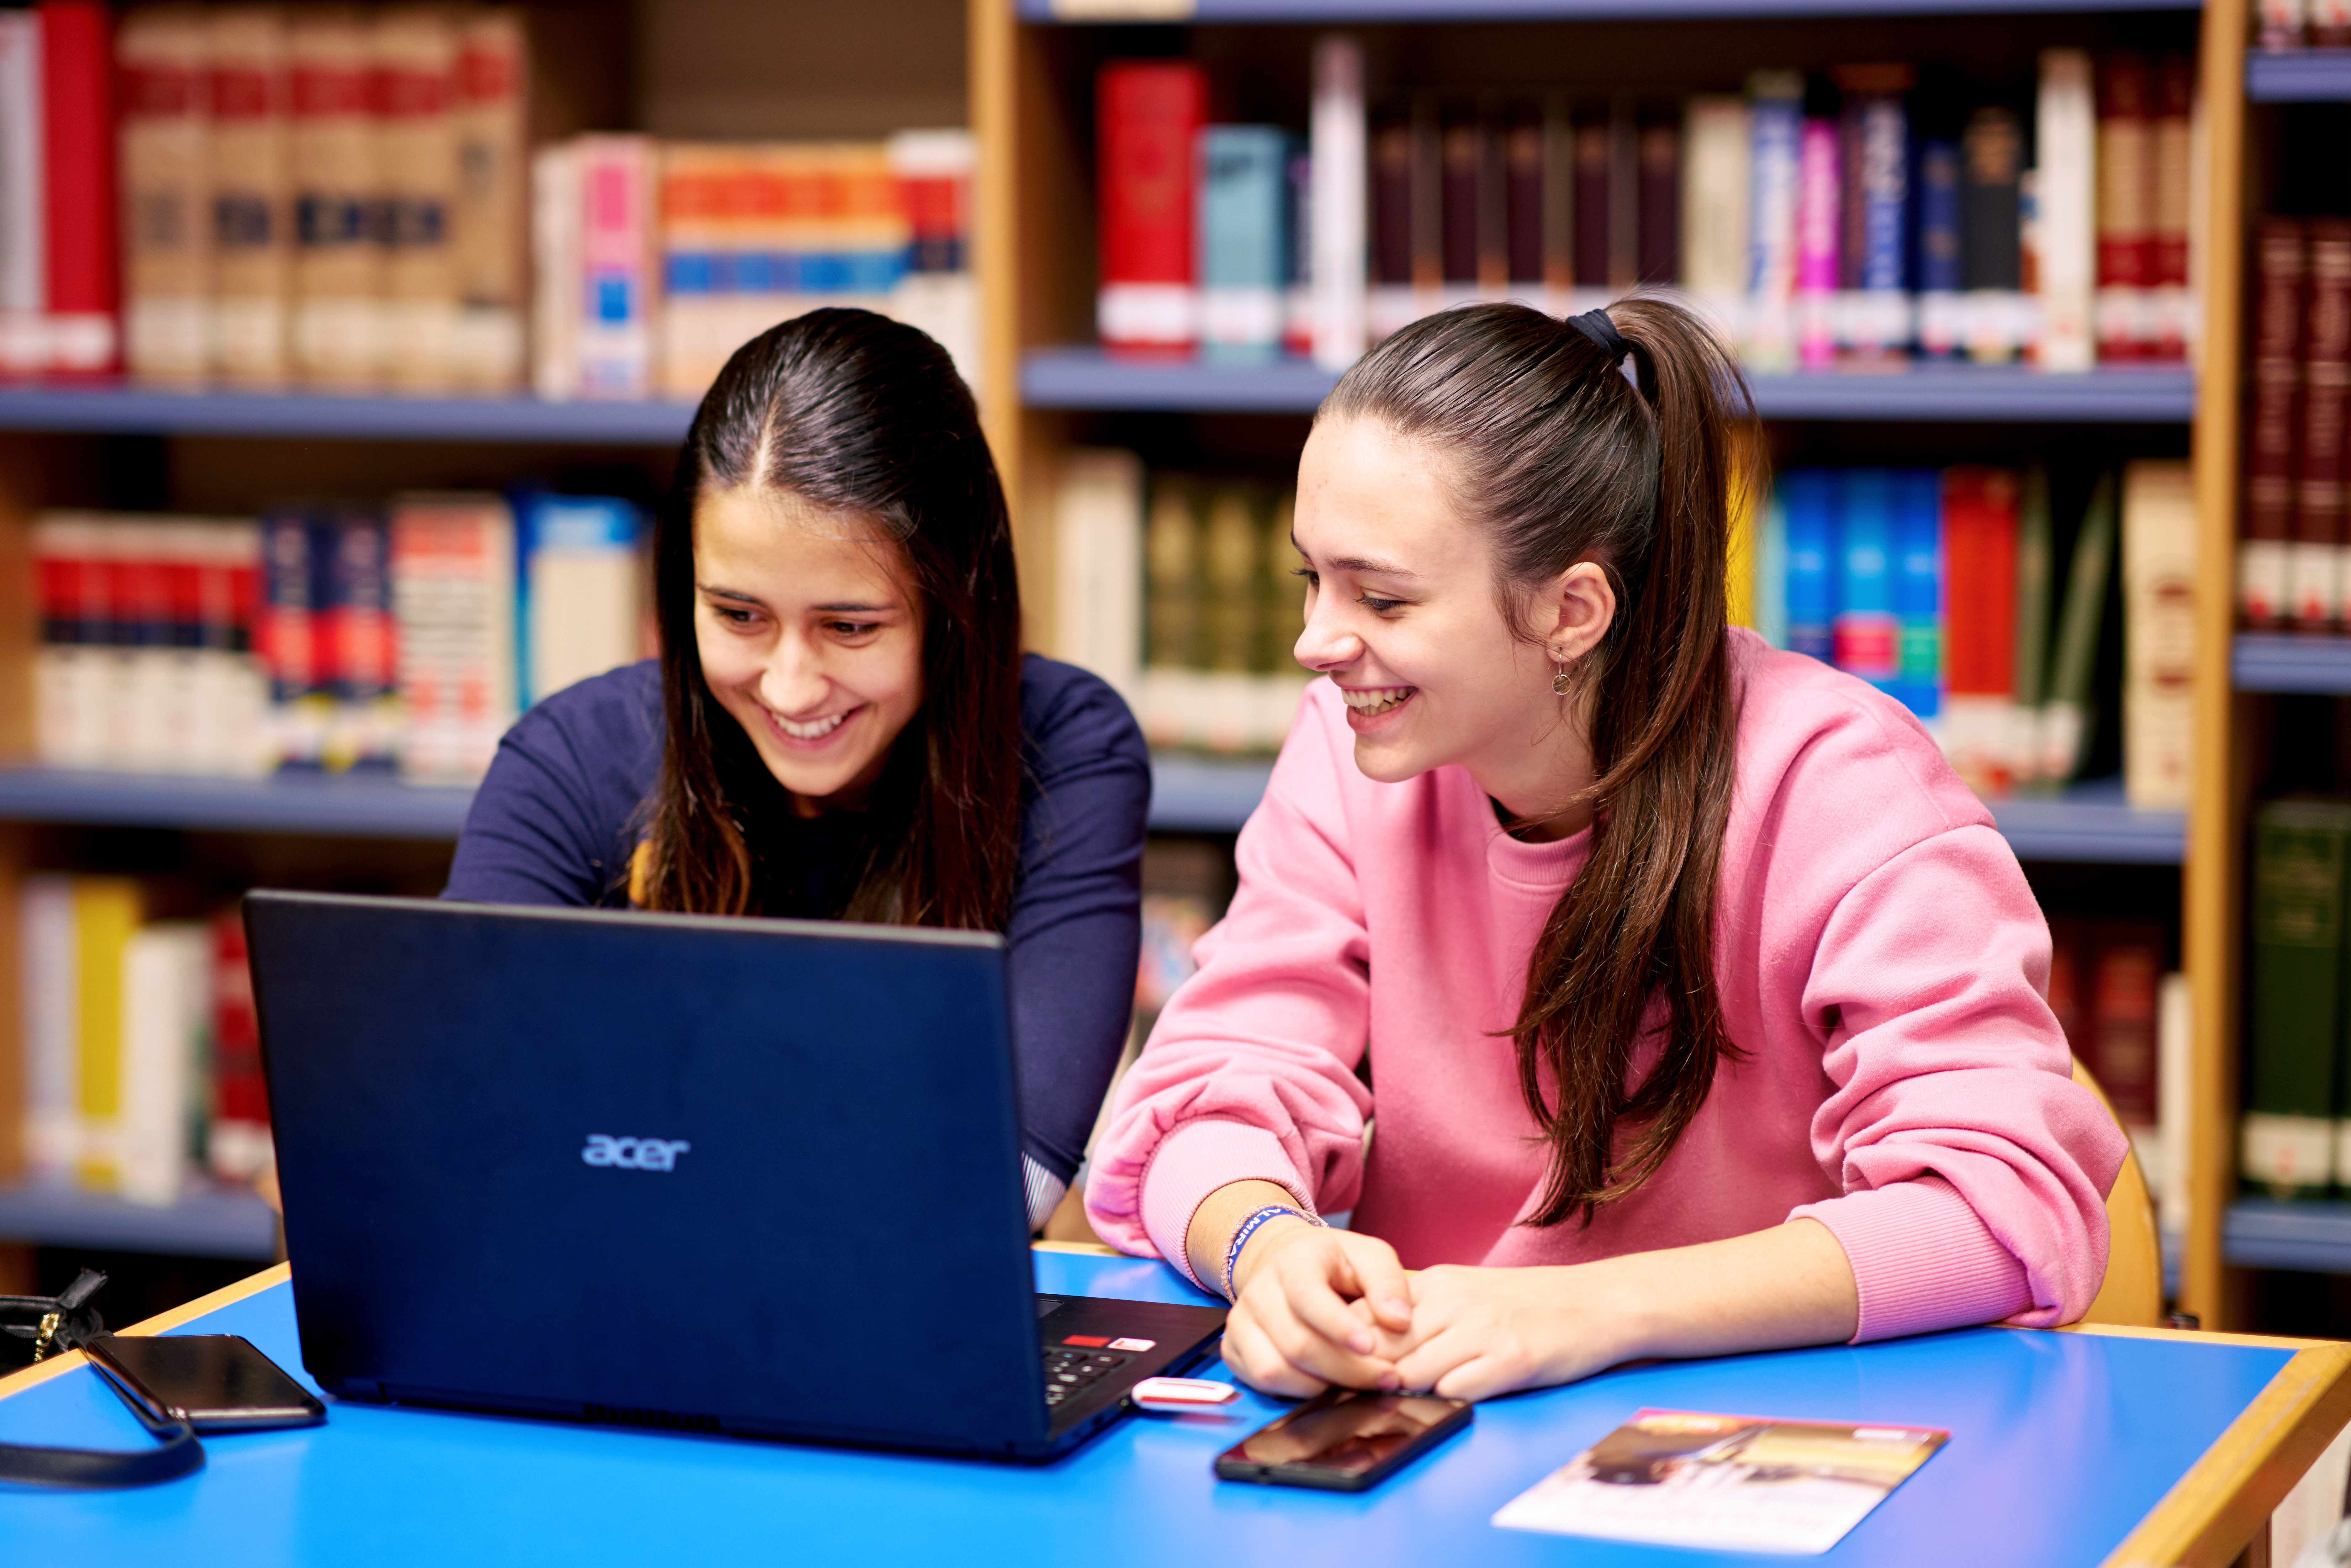 La Universidad de Salamanca apoya a sus estudiantes con la suspensión de los plazos de pago de matrícula y la entrega de material informático 